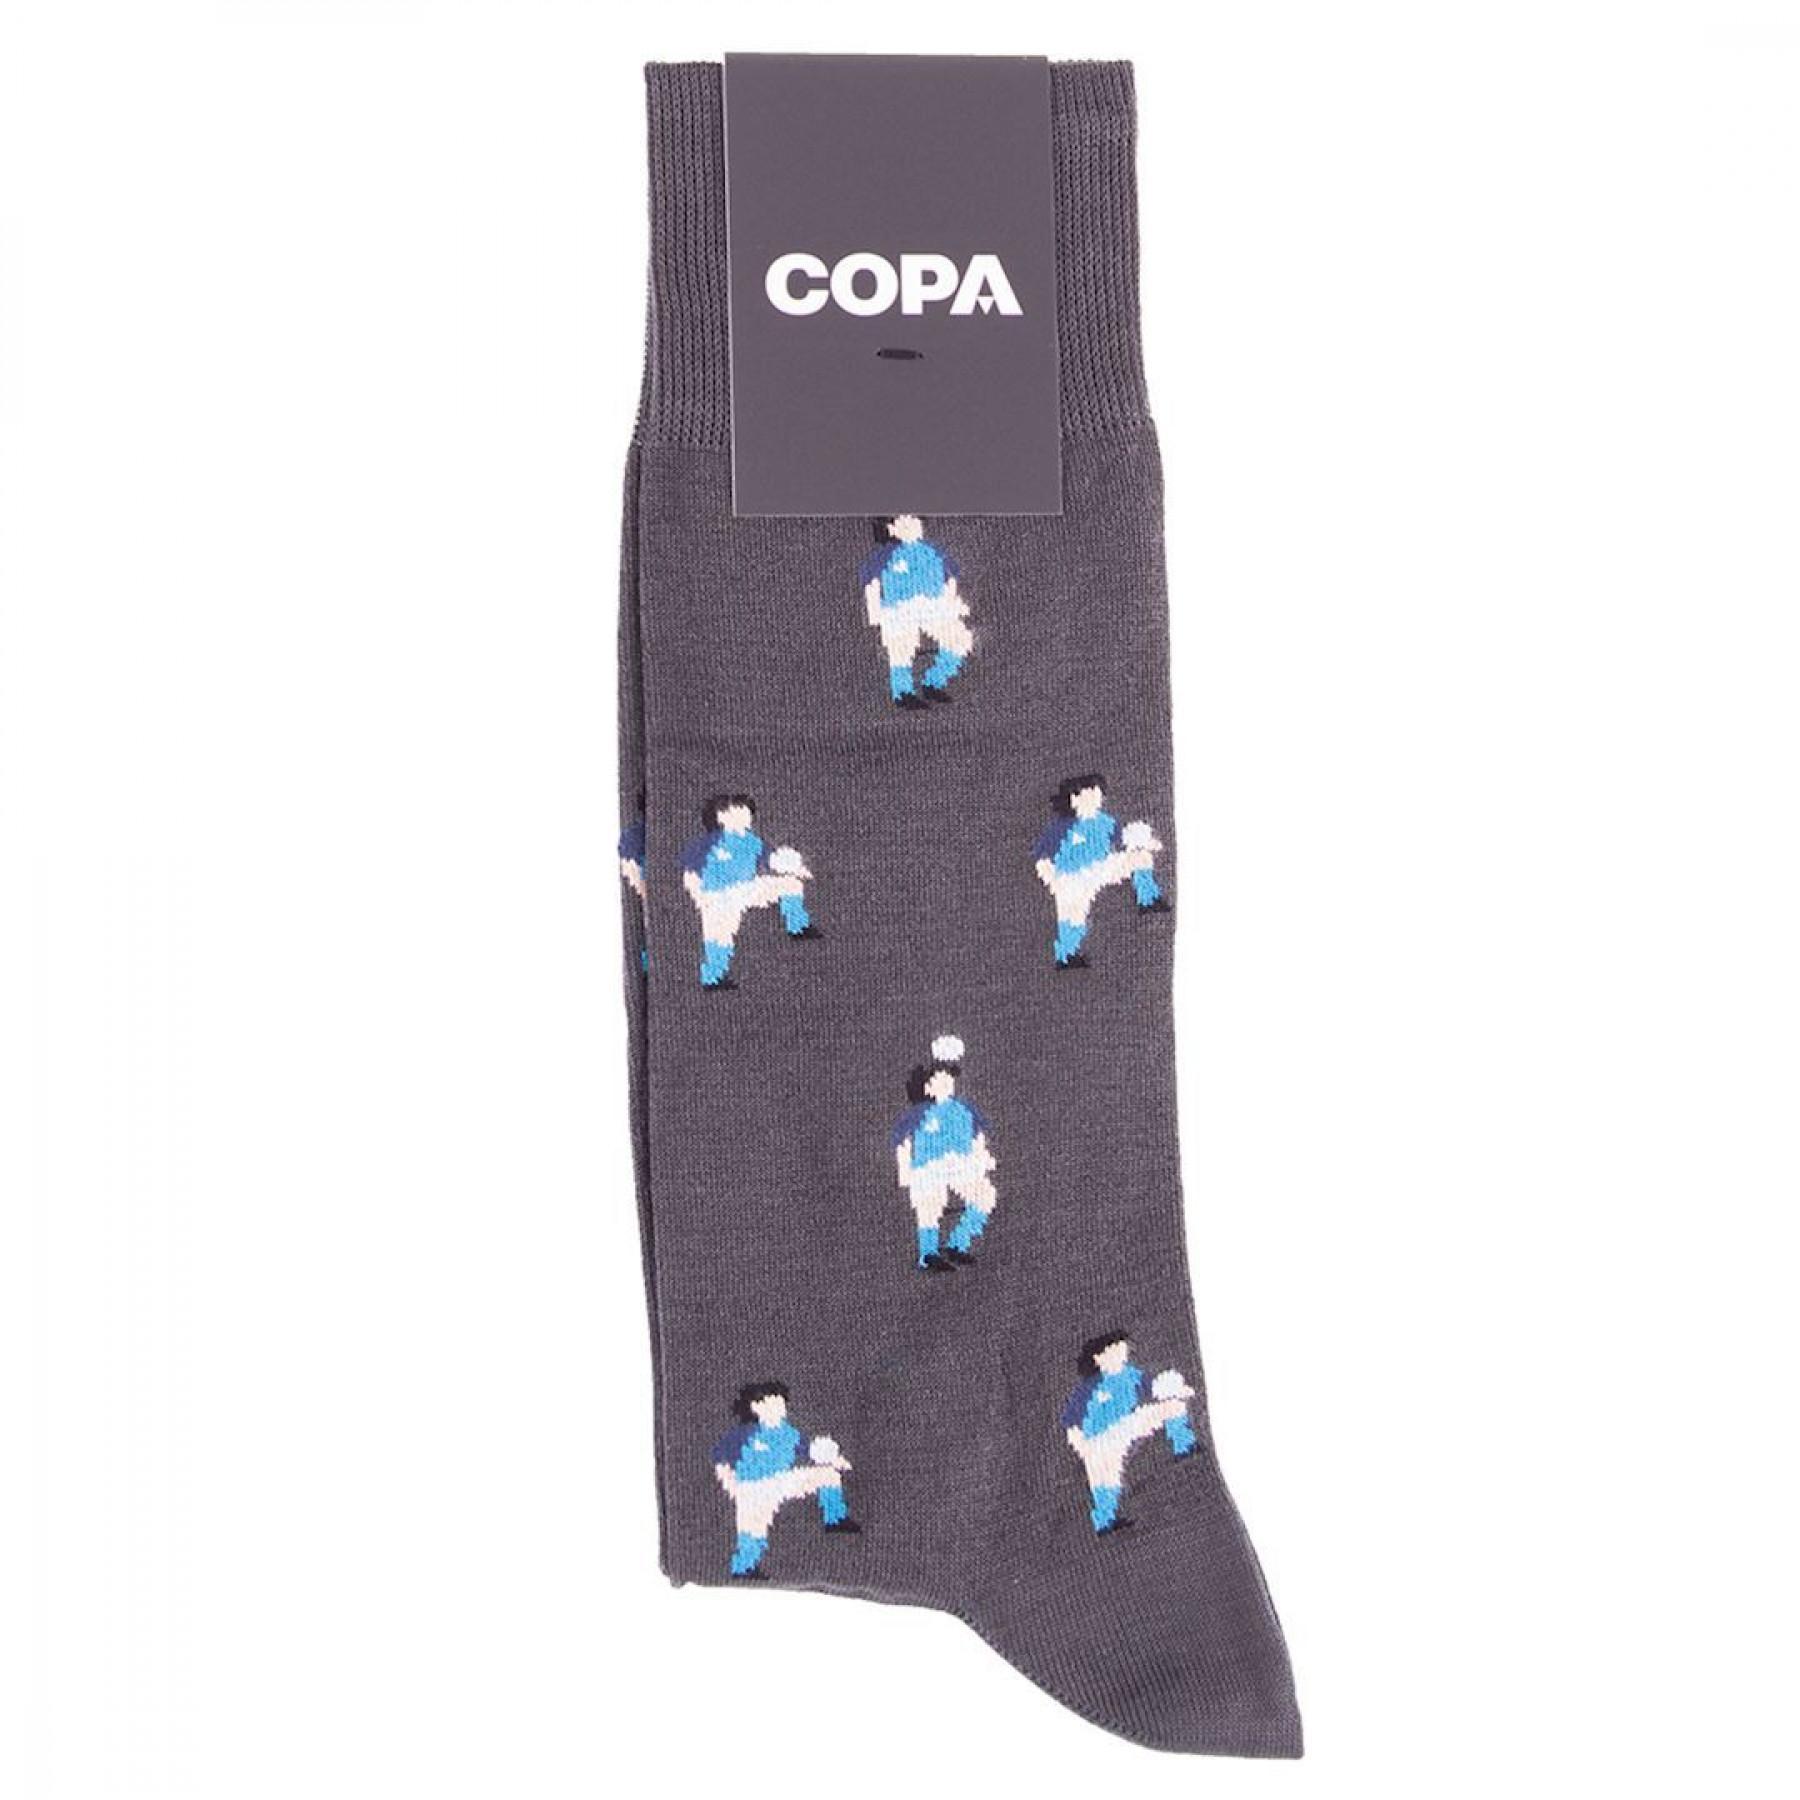 Socks Copa Live is Life